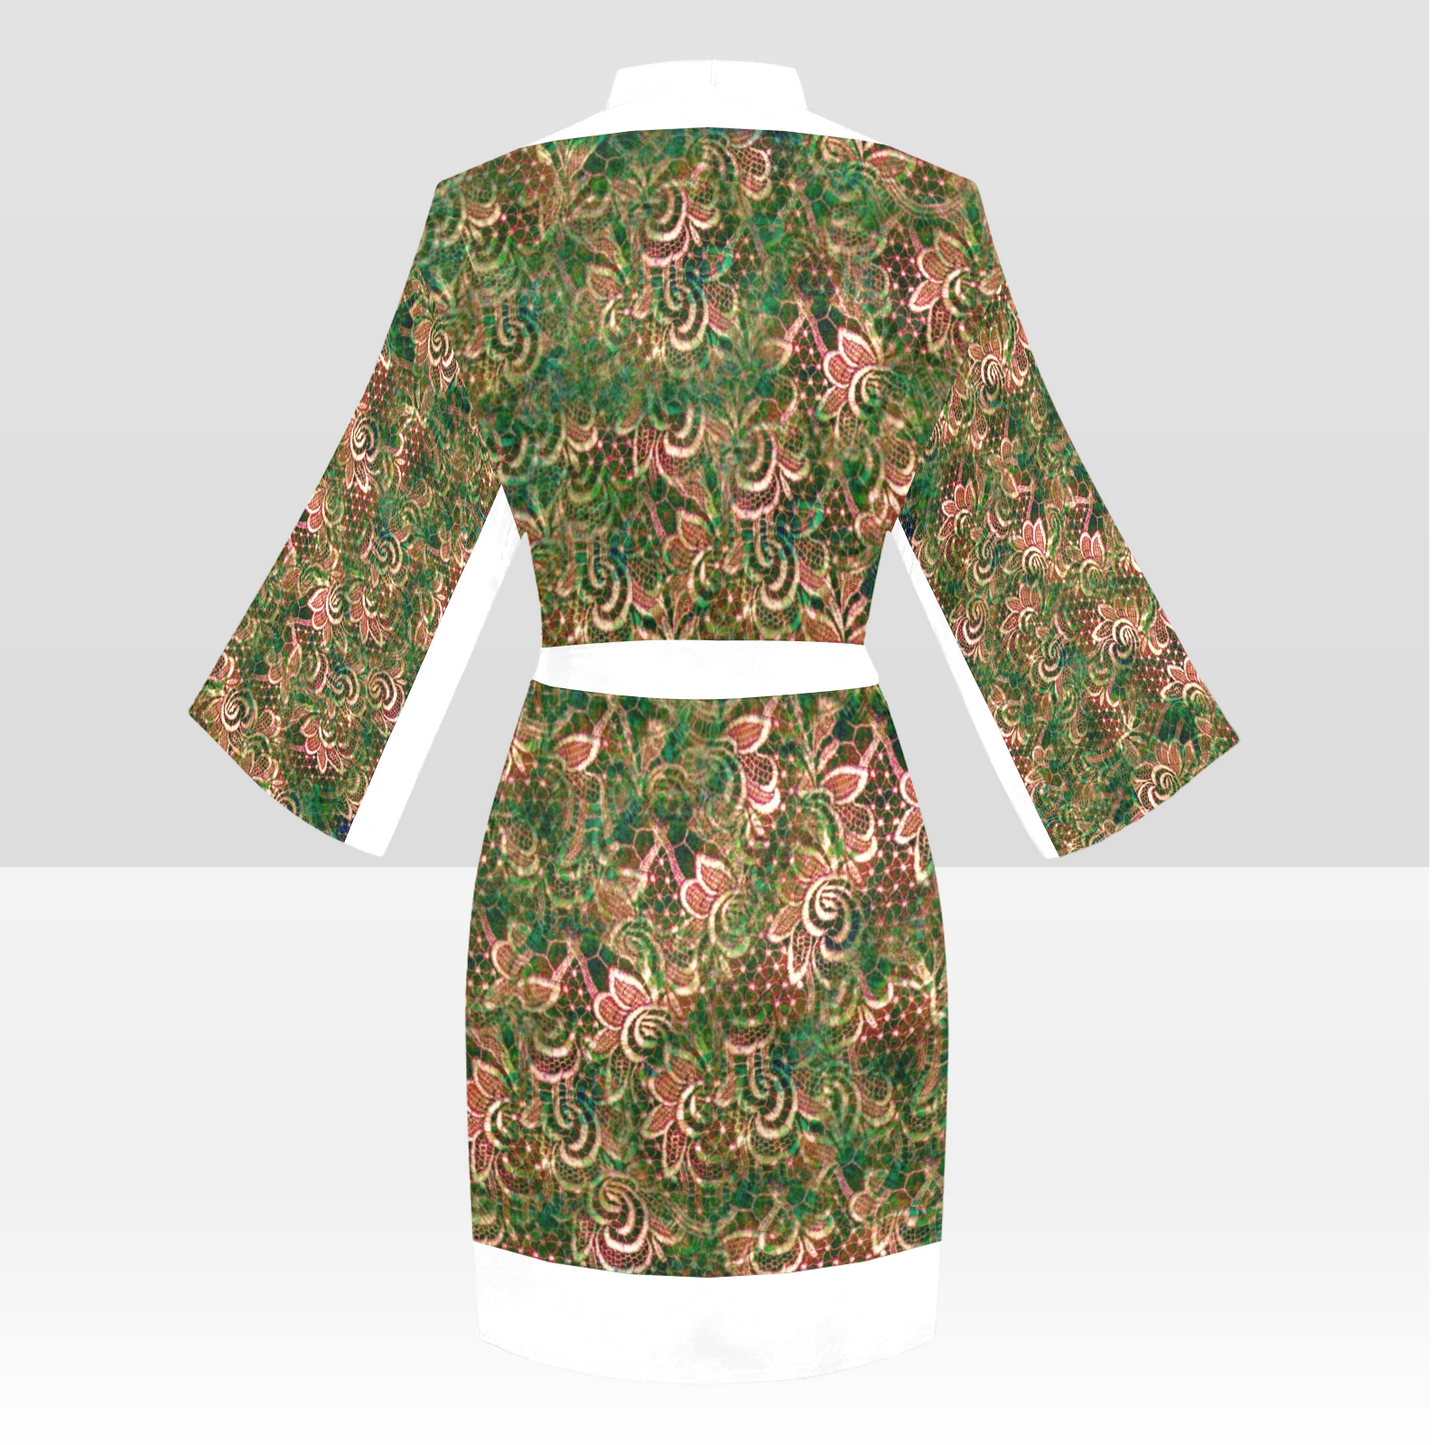 Victorian Lace Kimono Robe, Black or White Trim, Sizes XS to 2XL, Design 34